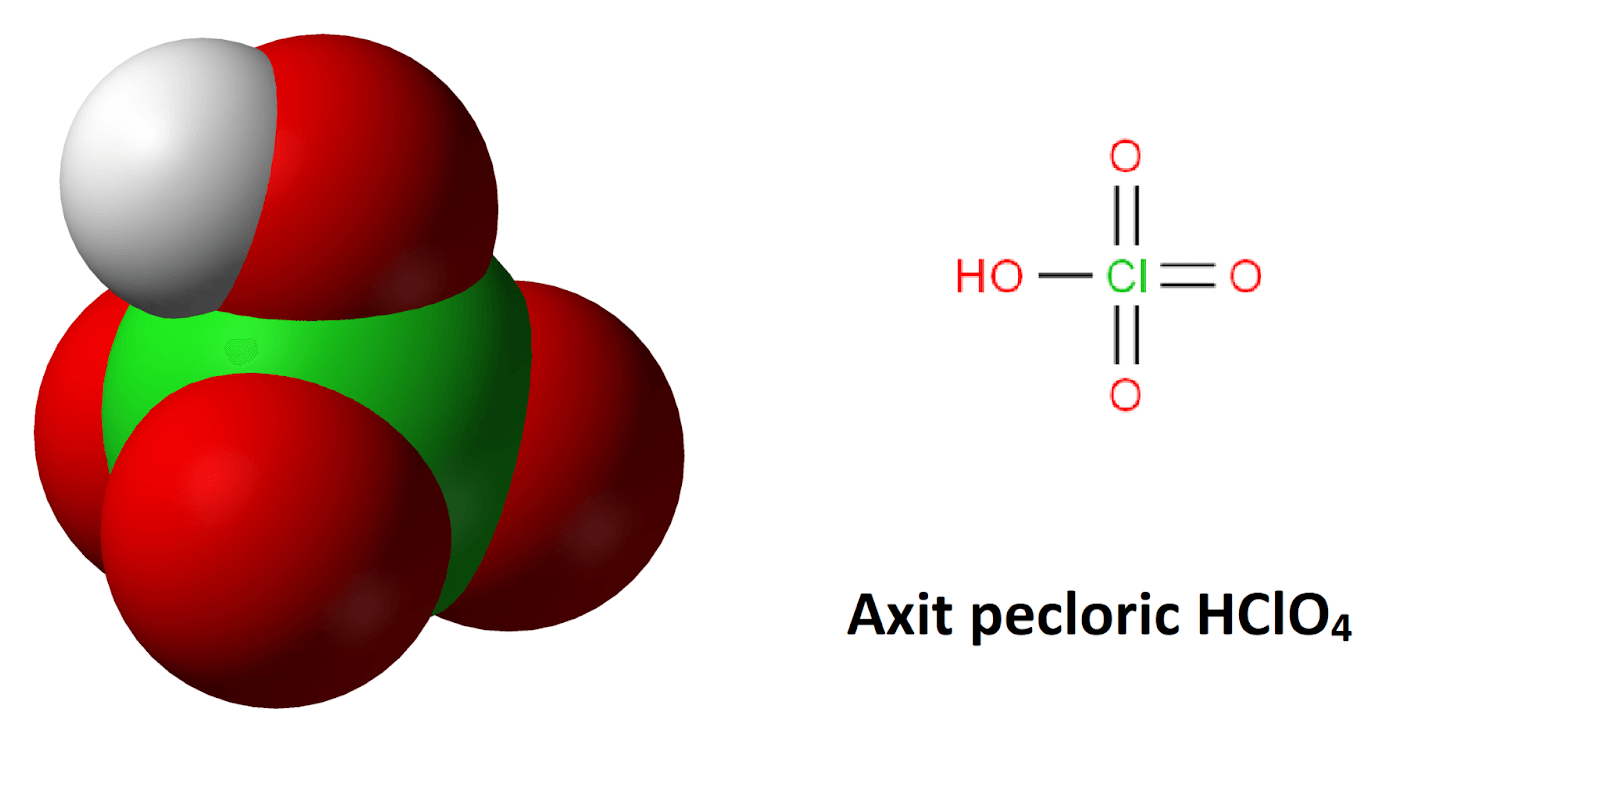 Axit pecloric có tính chất lý hóa và ứng dụng như thế nào trong công nghiệp?